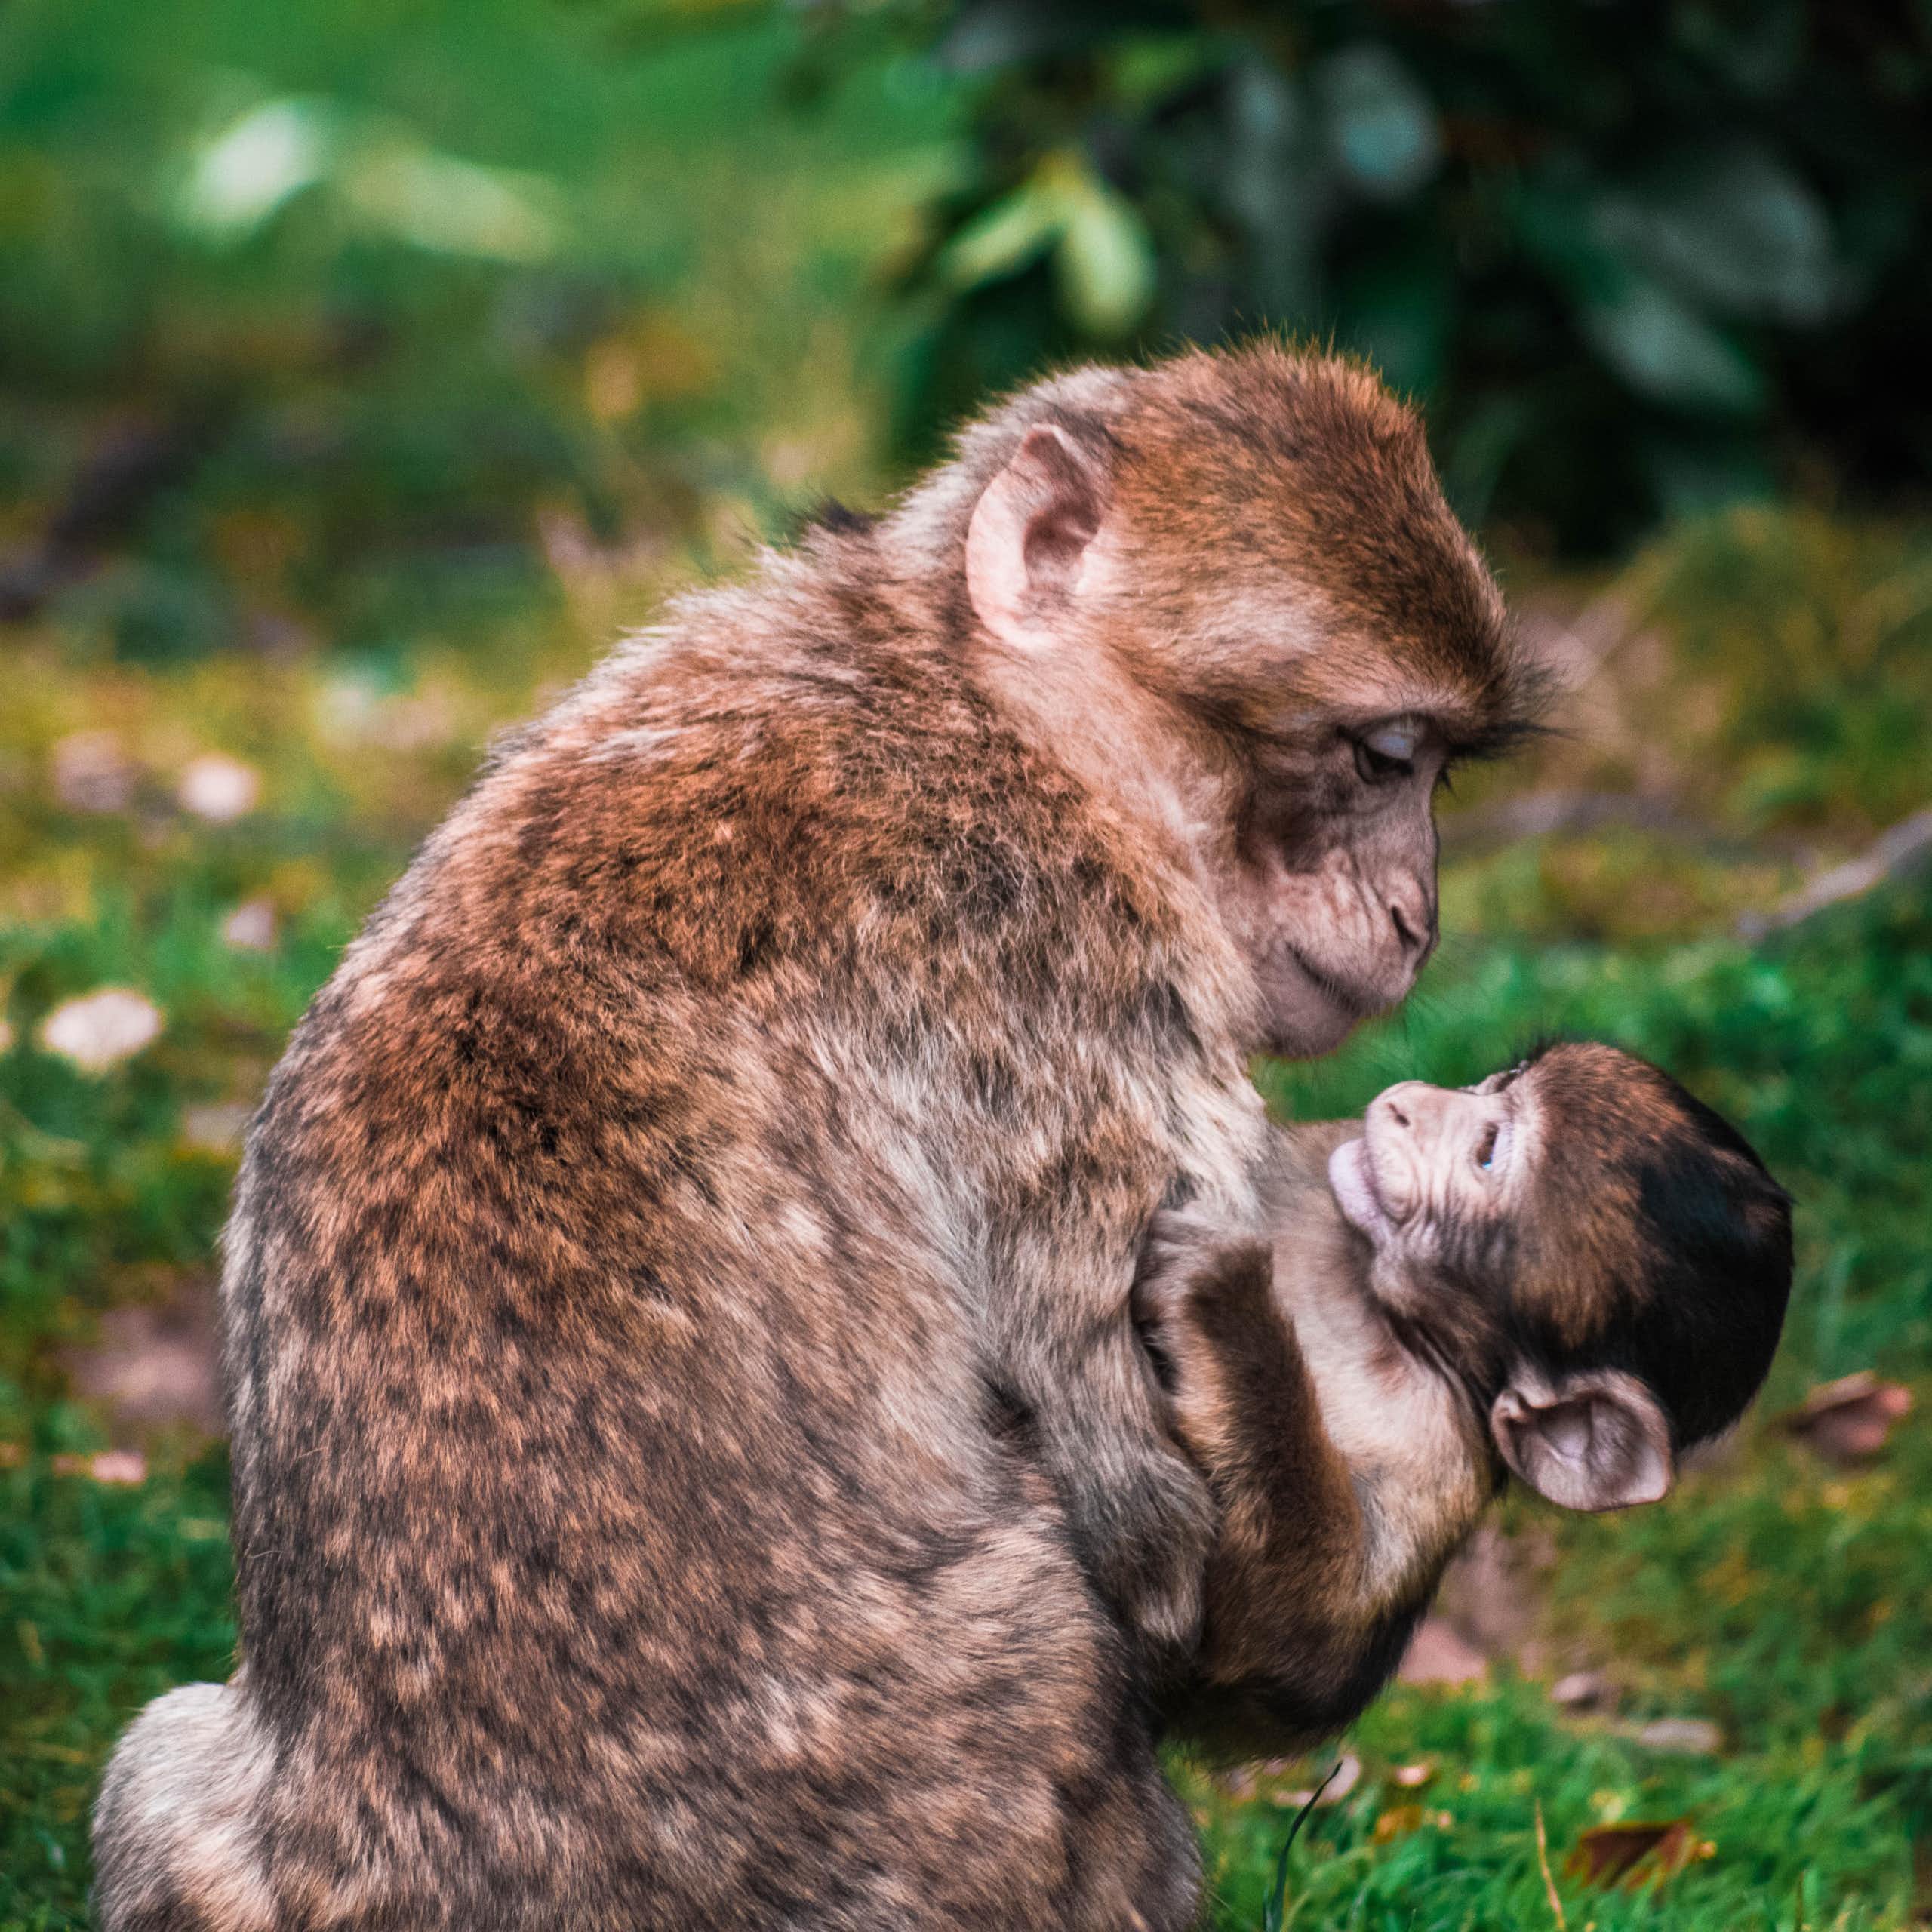 Une femelle singe tient son bébé dans les bras.